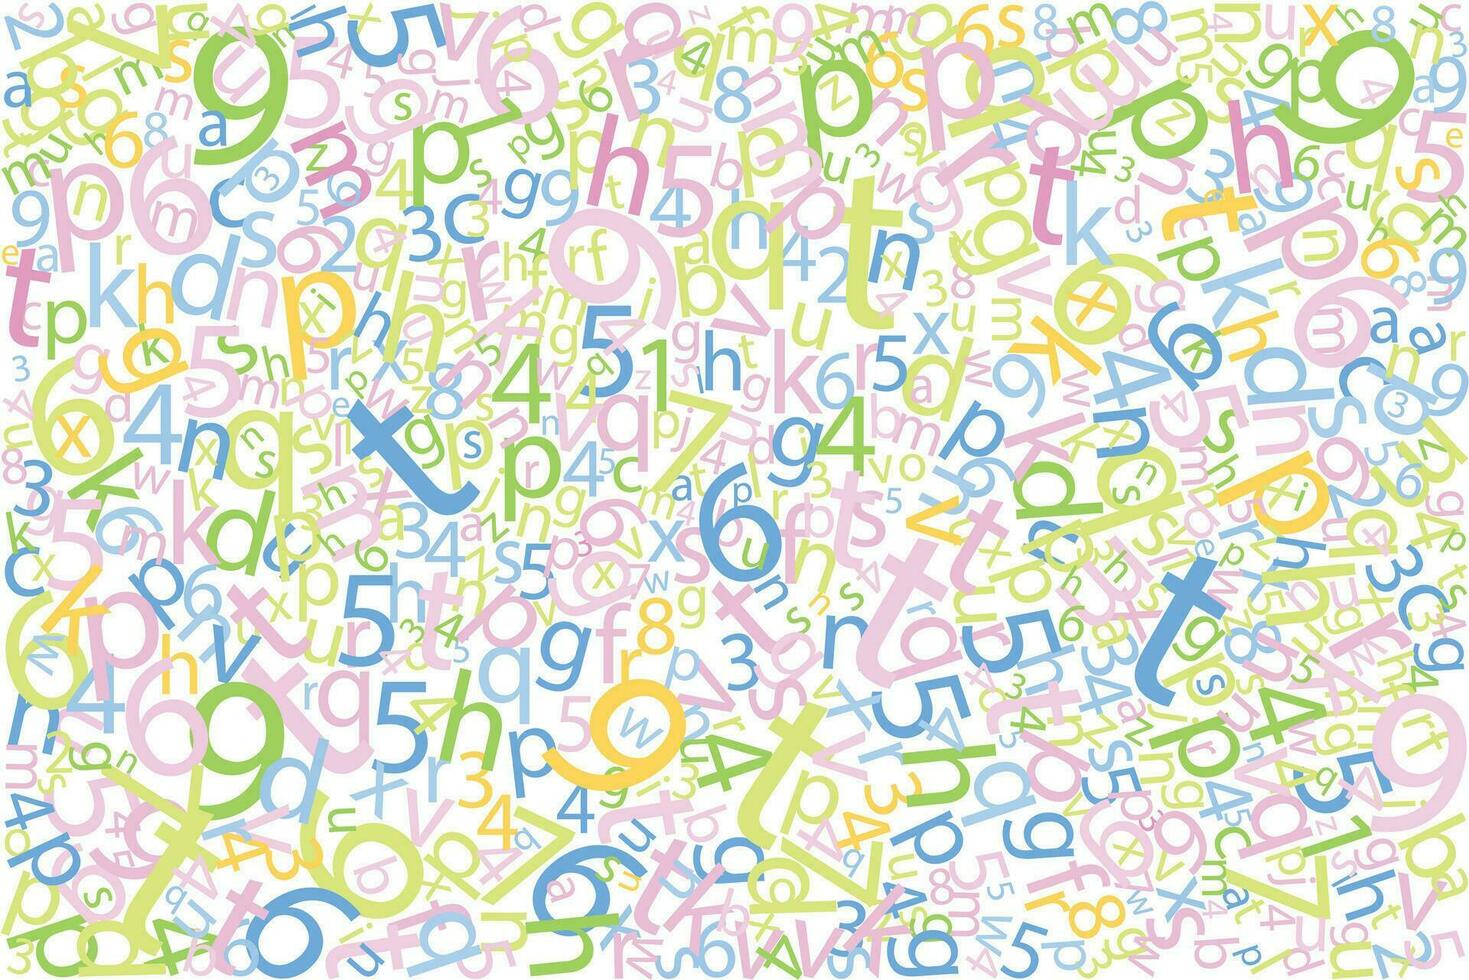 Vektor Hintergrund mit Briefe und Zahlen Muster zum Textil- oder andere verwenden, im modern Farben